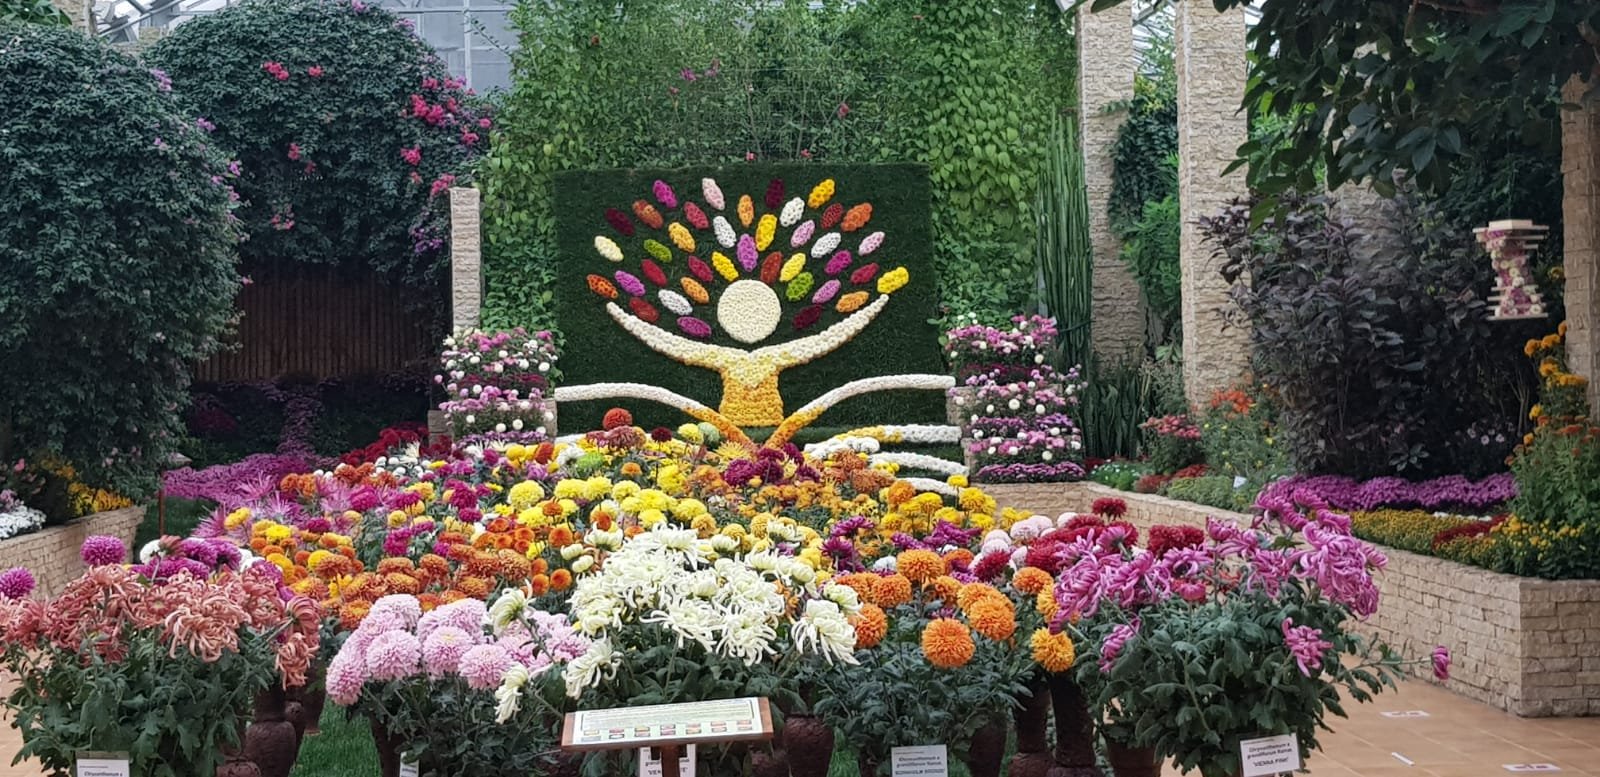  GALERIE FOTO Grădina Botanică Iași, polul atracției în această perioadă: mii de flori și sculpturi vegetale